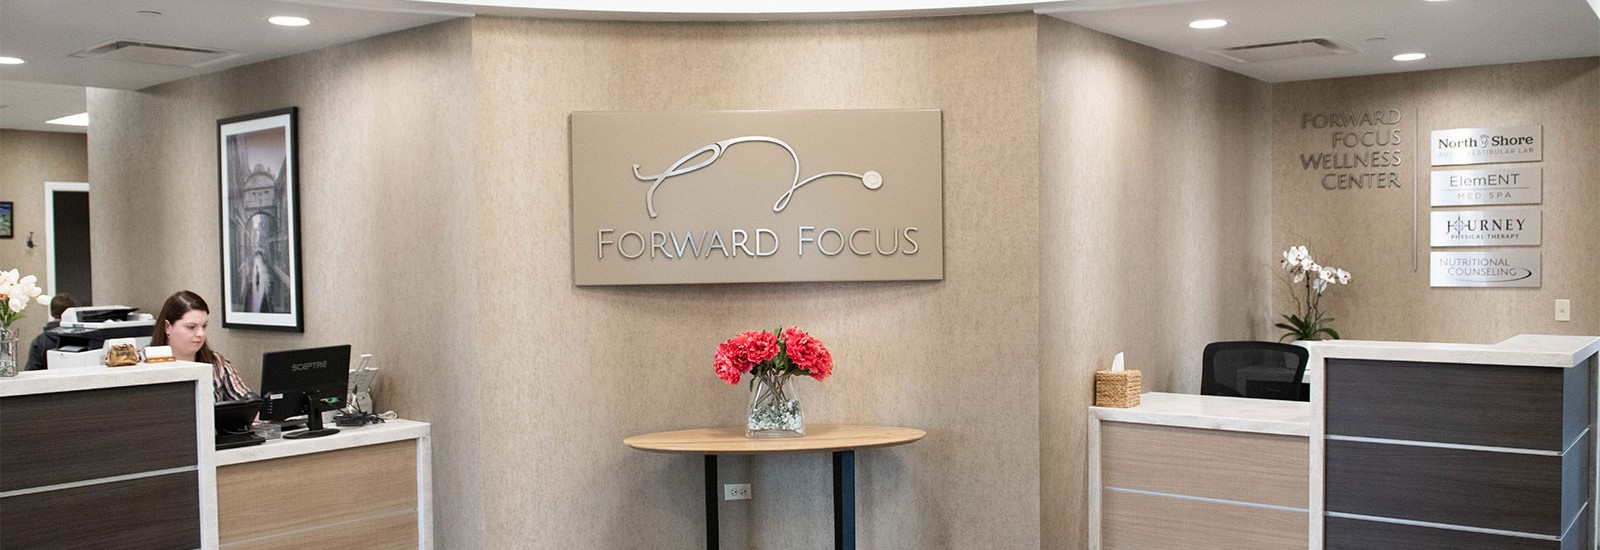 Forward Focus Concierge Medicine Reception Area